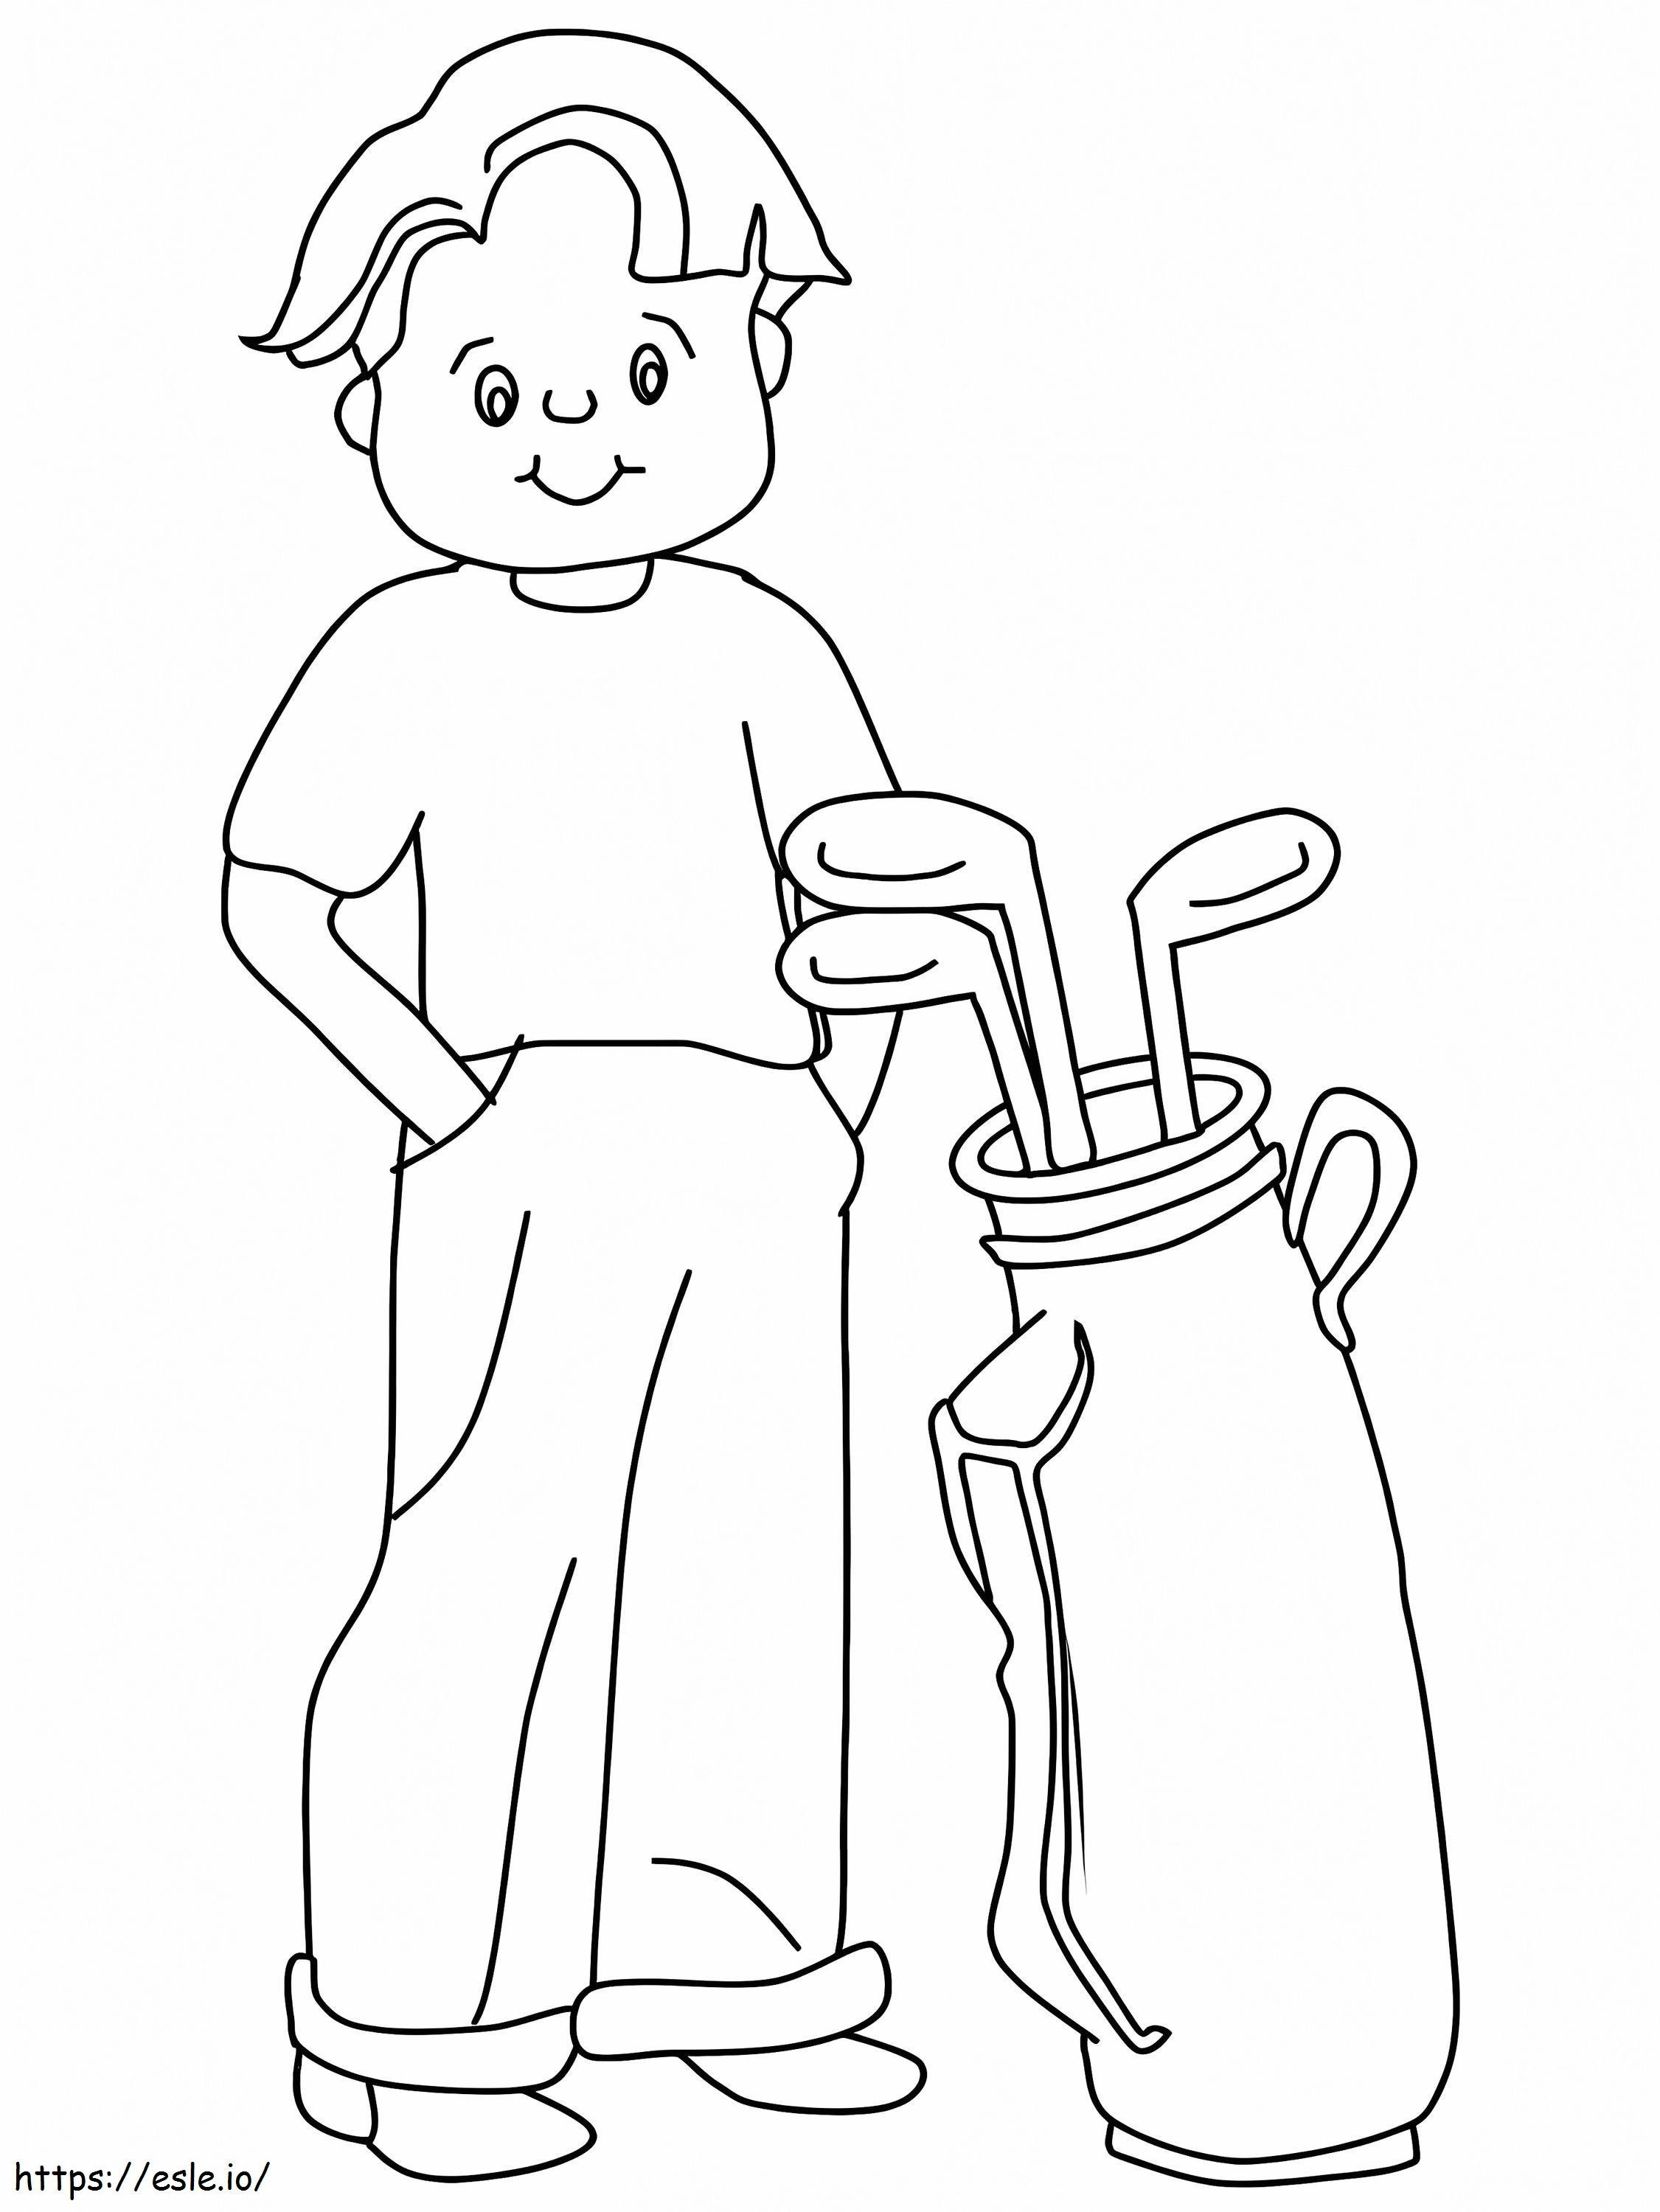 Kleiner Junge, der Golf spielt ausmalbilder